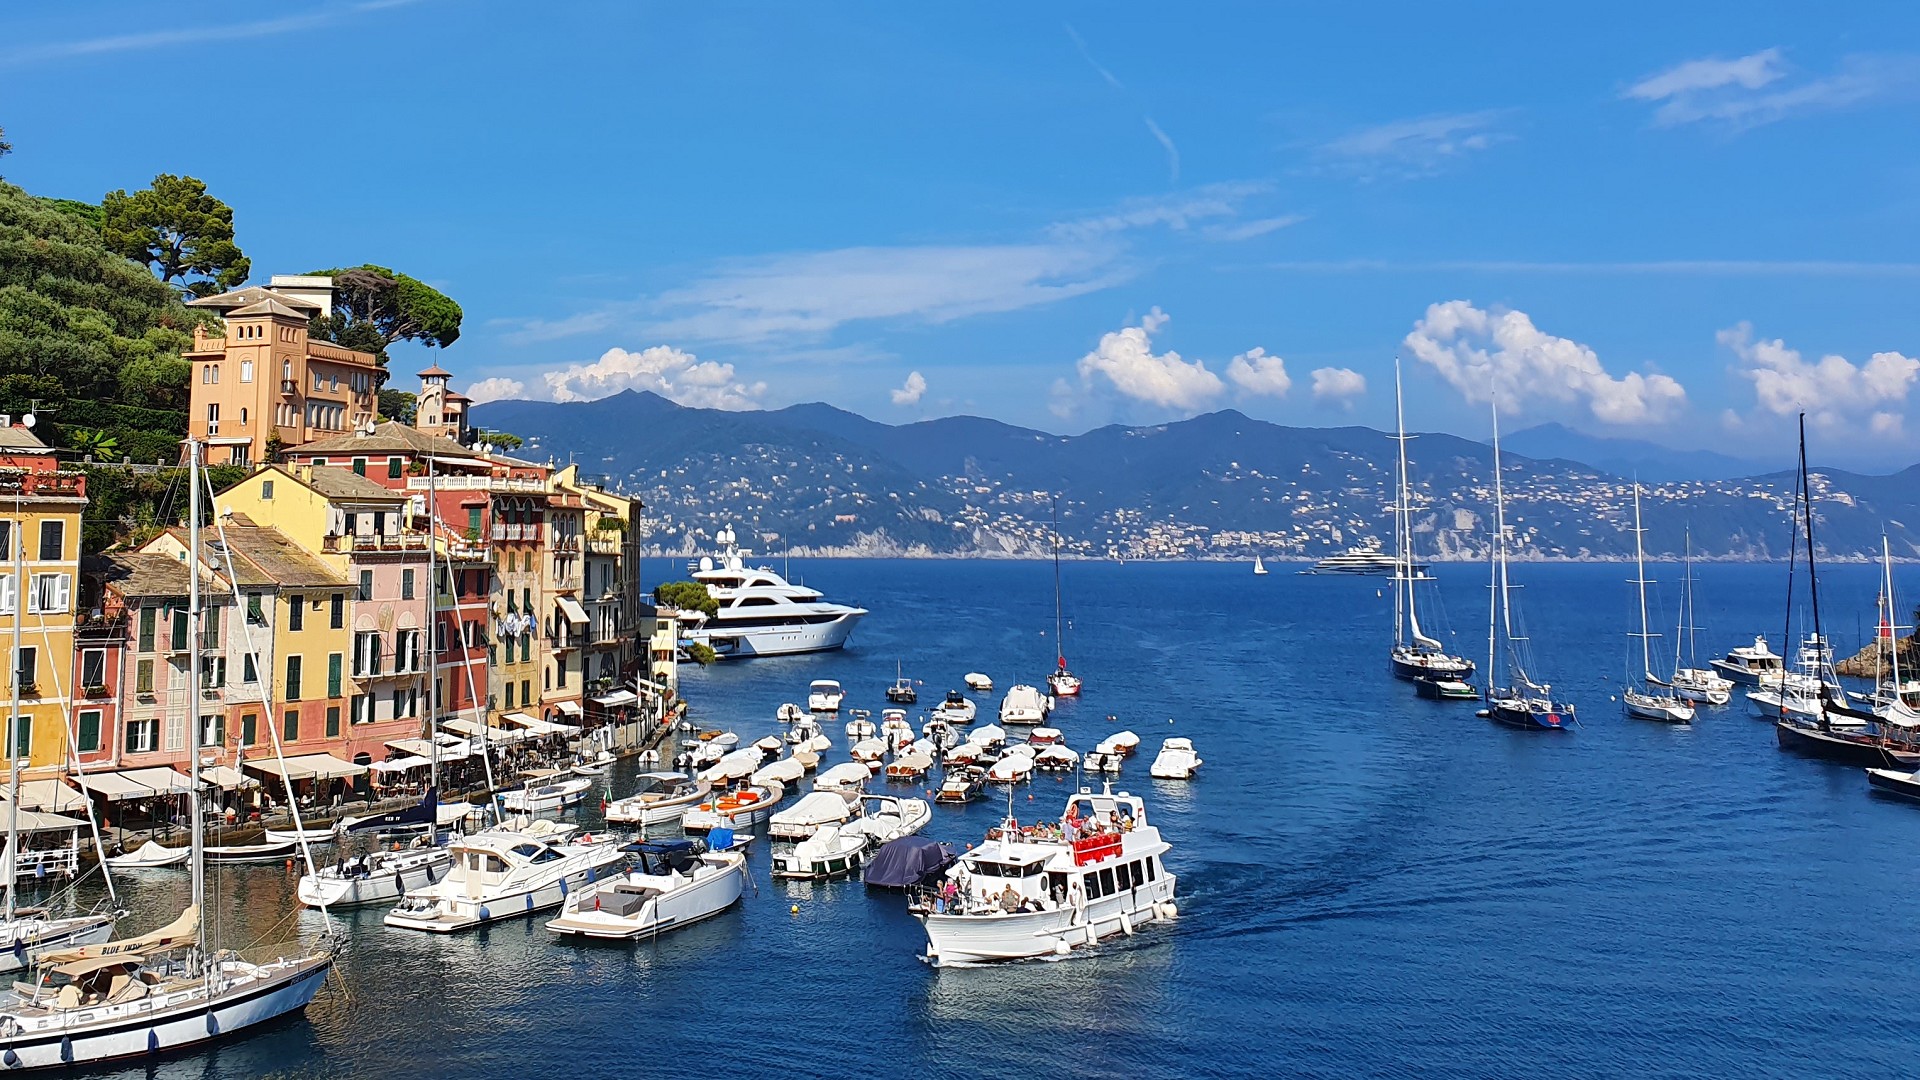 Portofino - Travel Tips